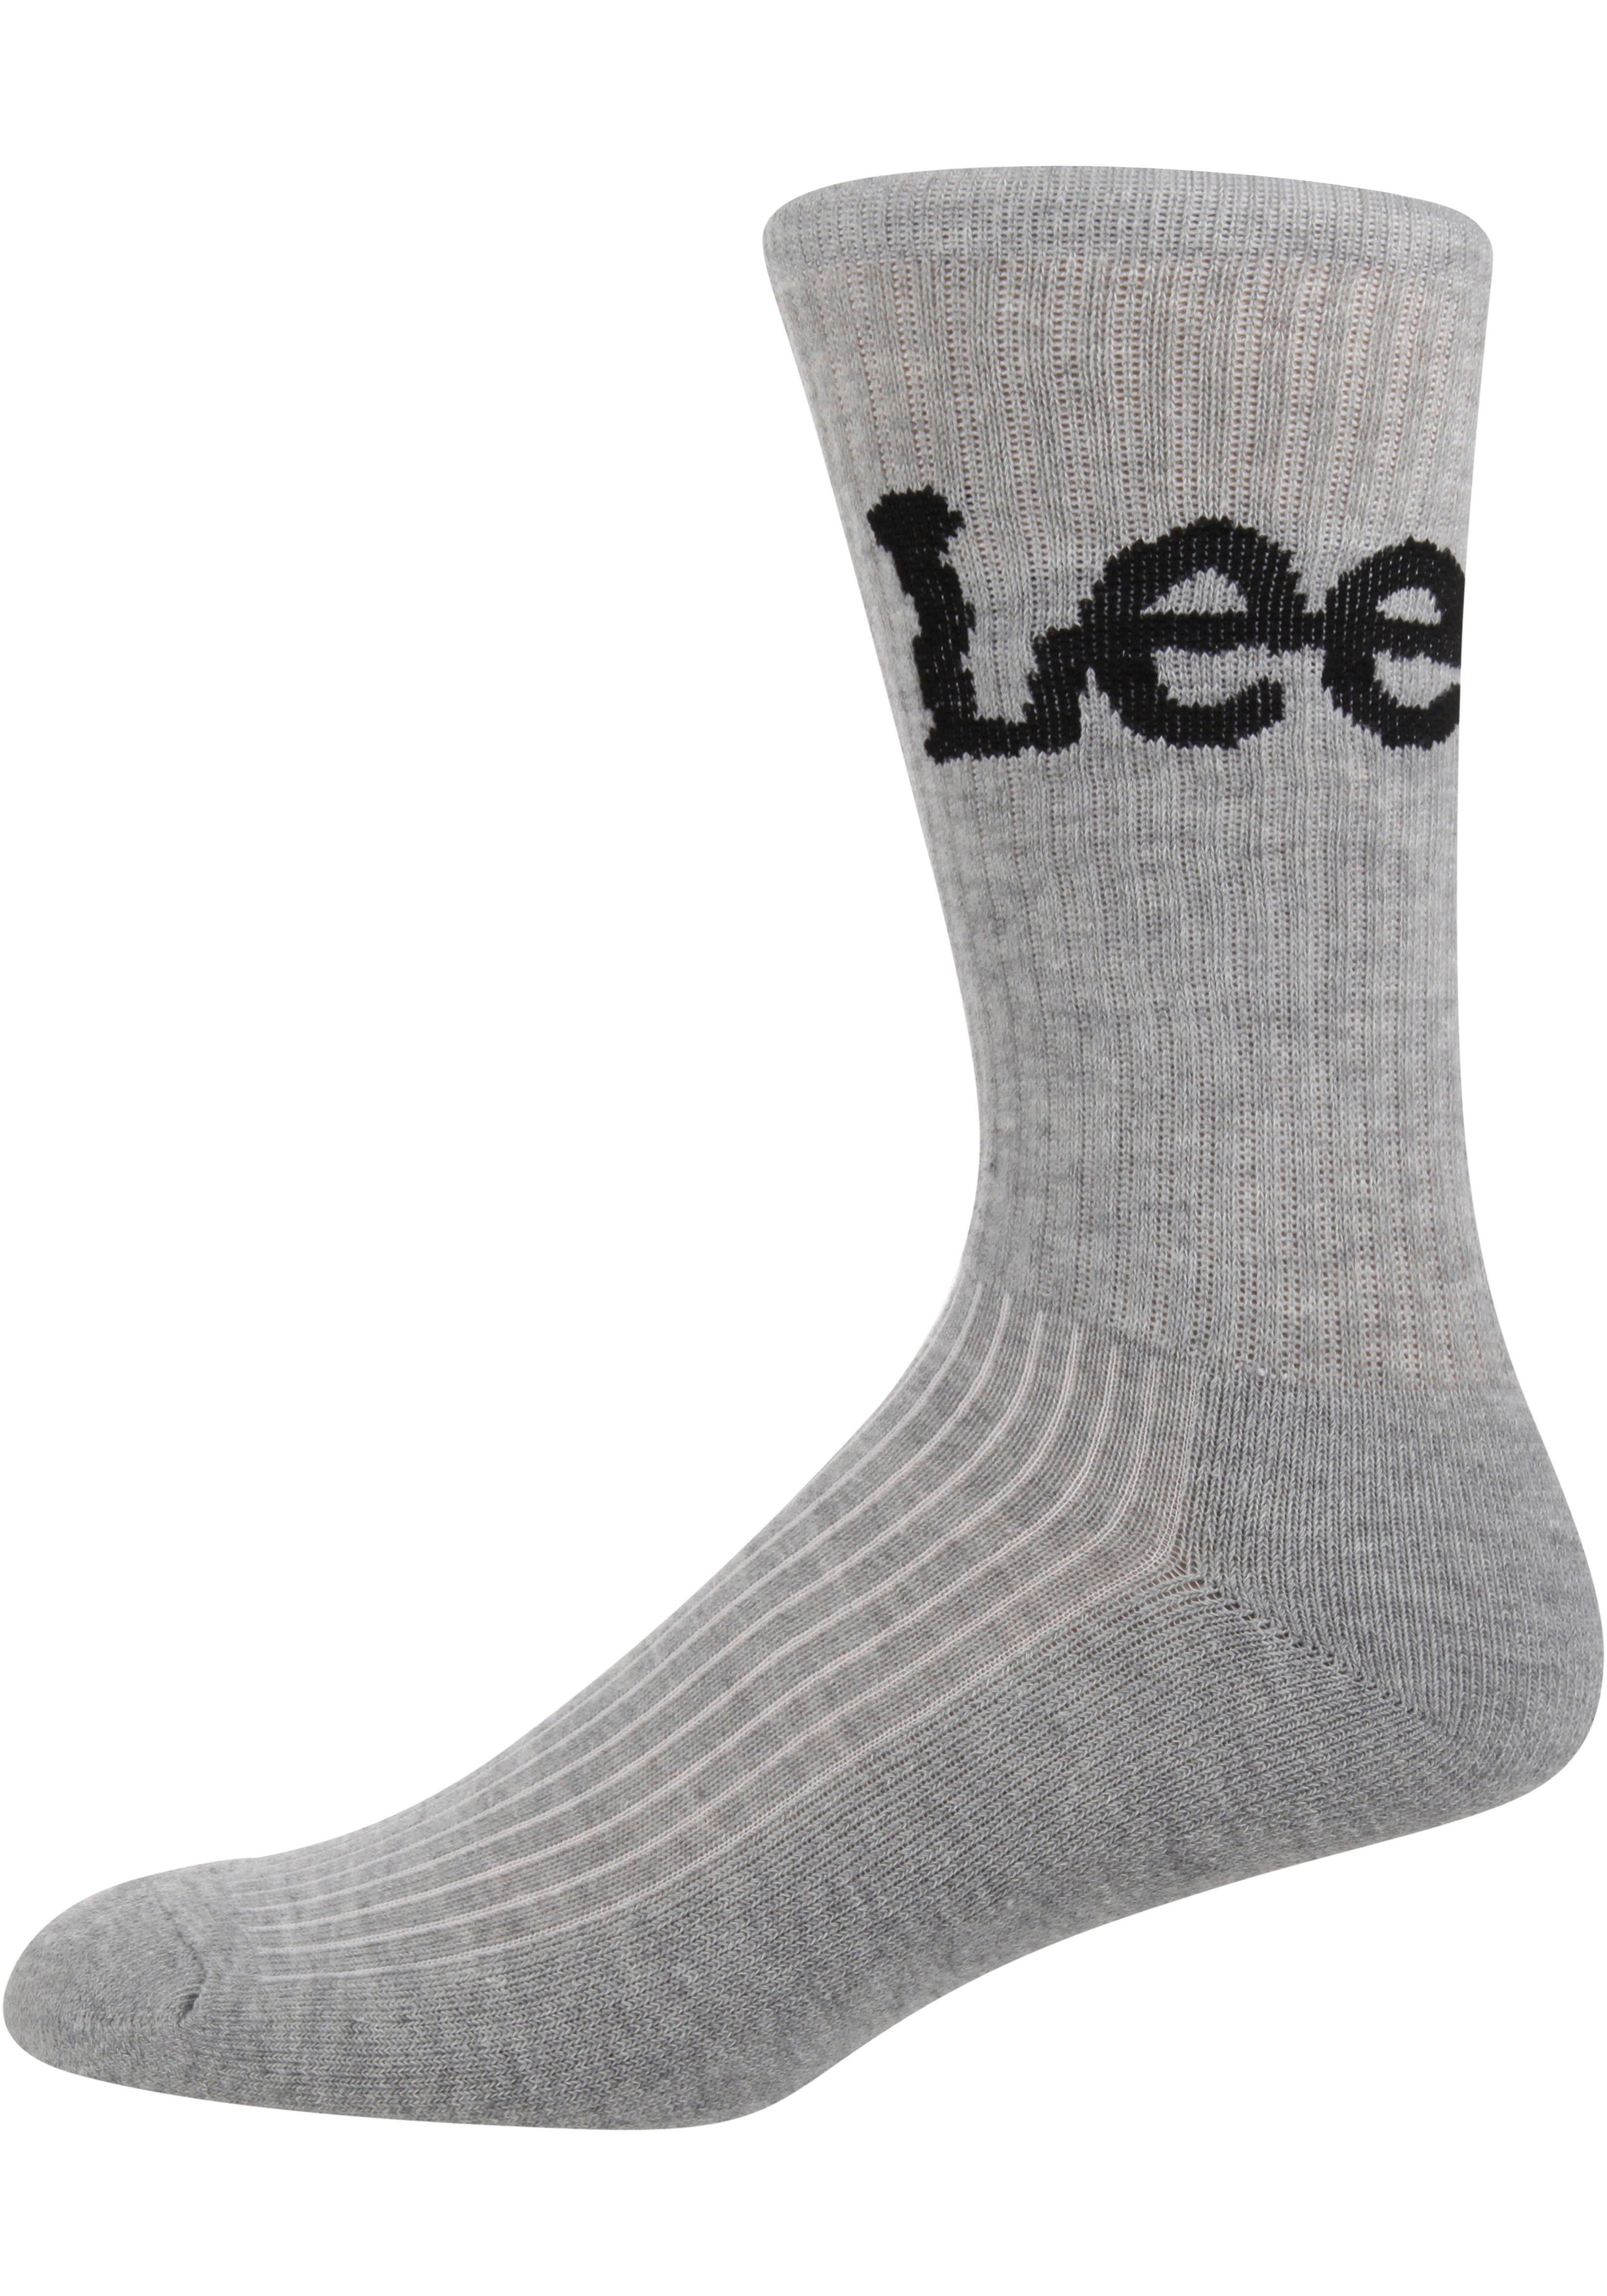 Lee® Sports Black/Grey Sportsocken 3-Paar) CROBETT Unisex Lee Marl/White Socks (Packung,